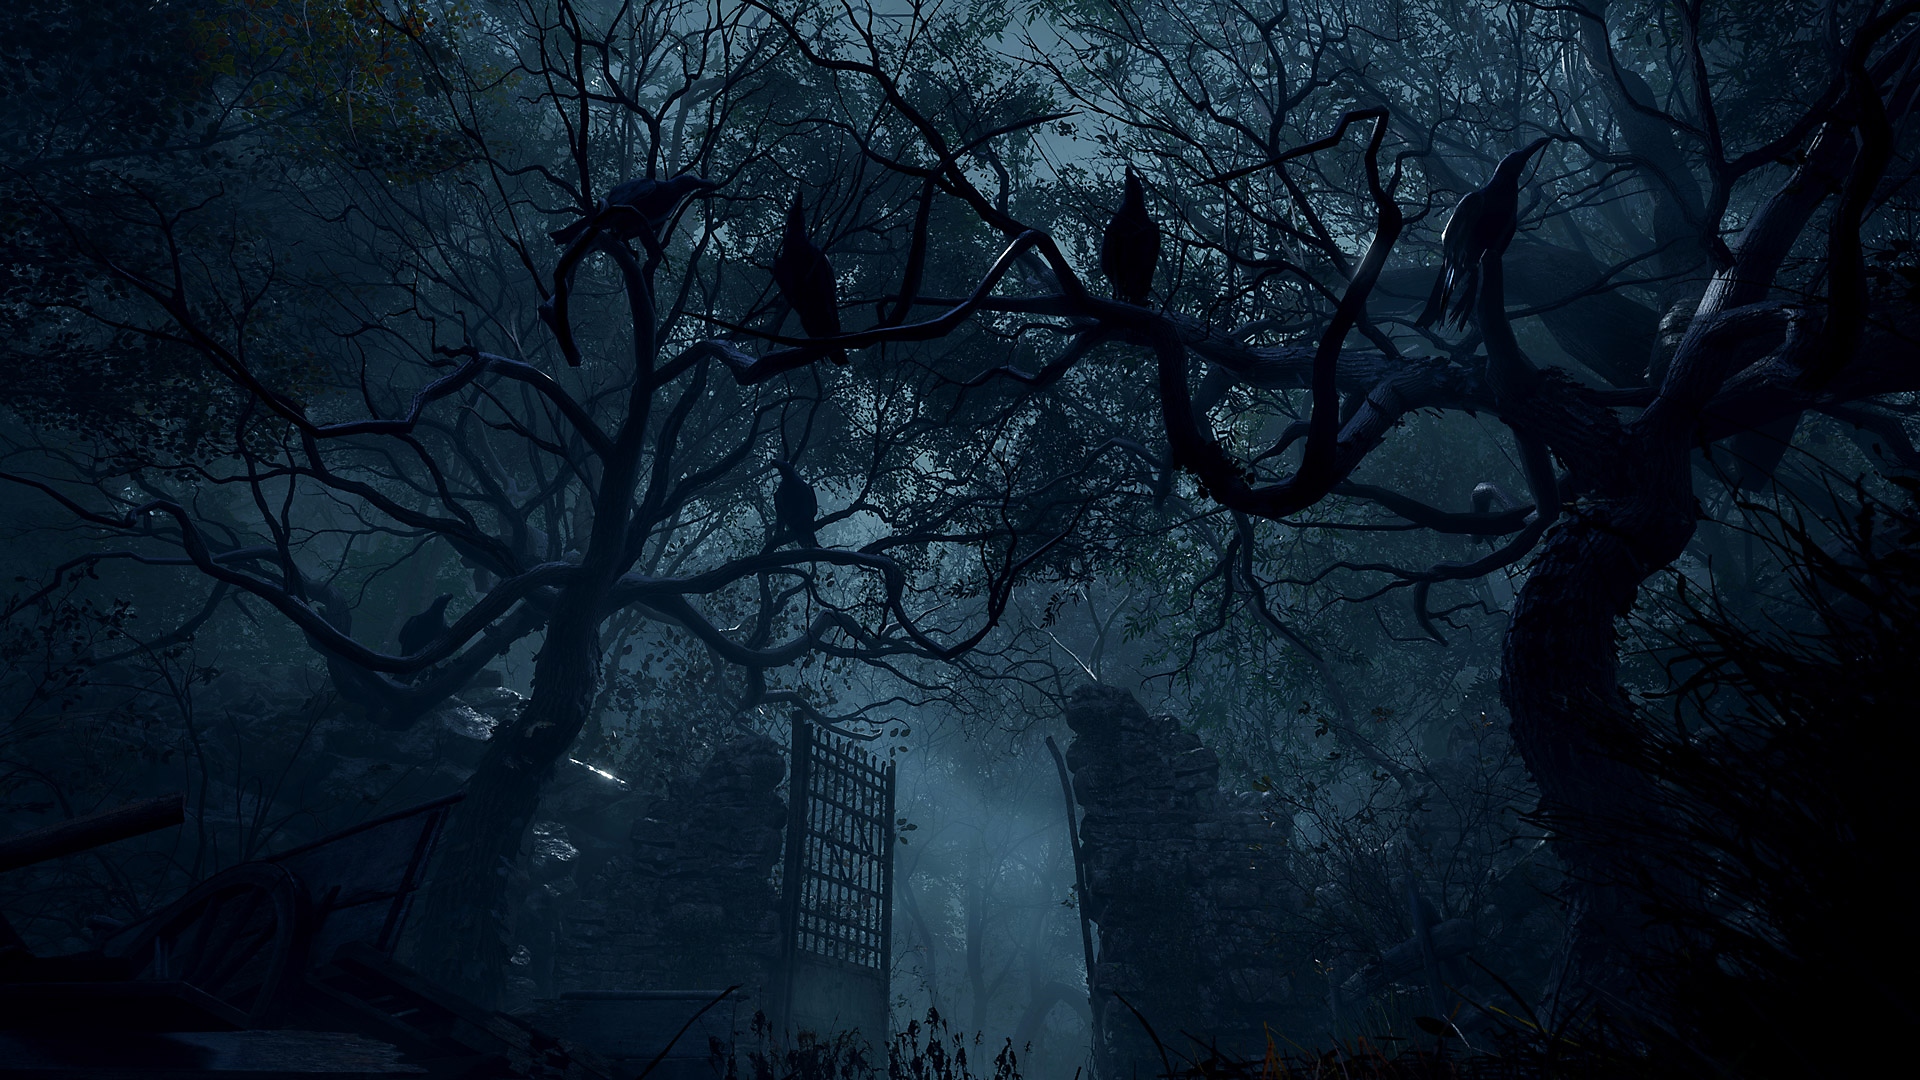 Resident Evil 4 - Captura de tela mostrando grandes portões de pedra em uma área repleta de árvores.